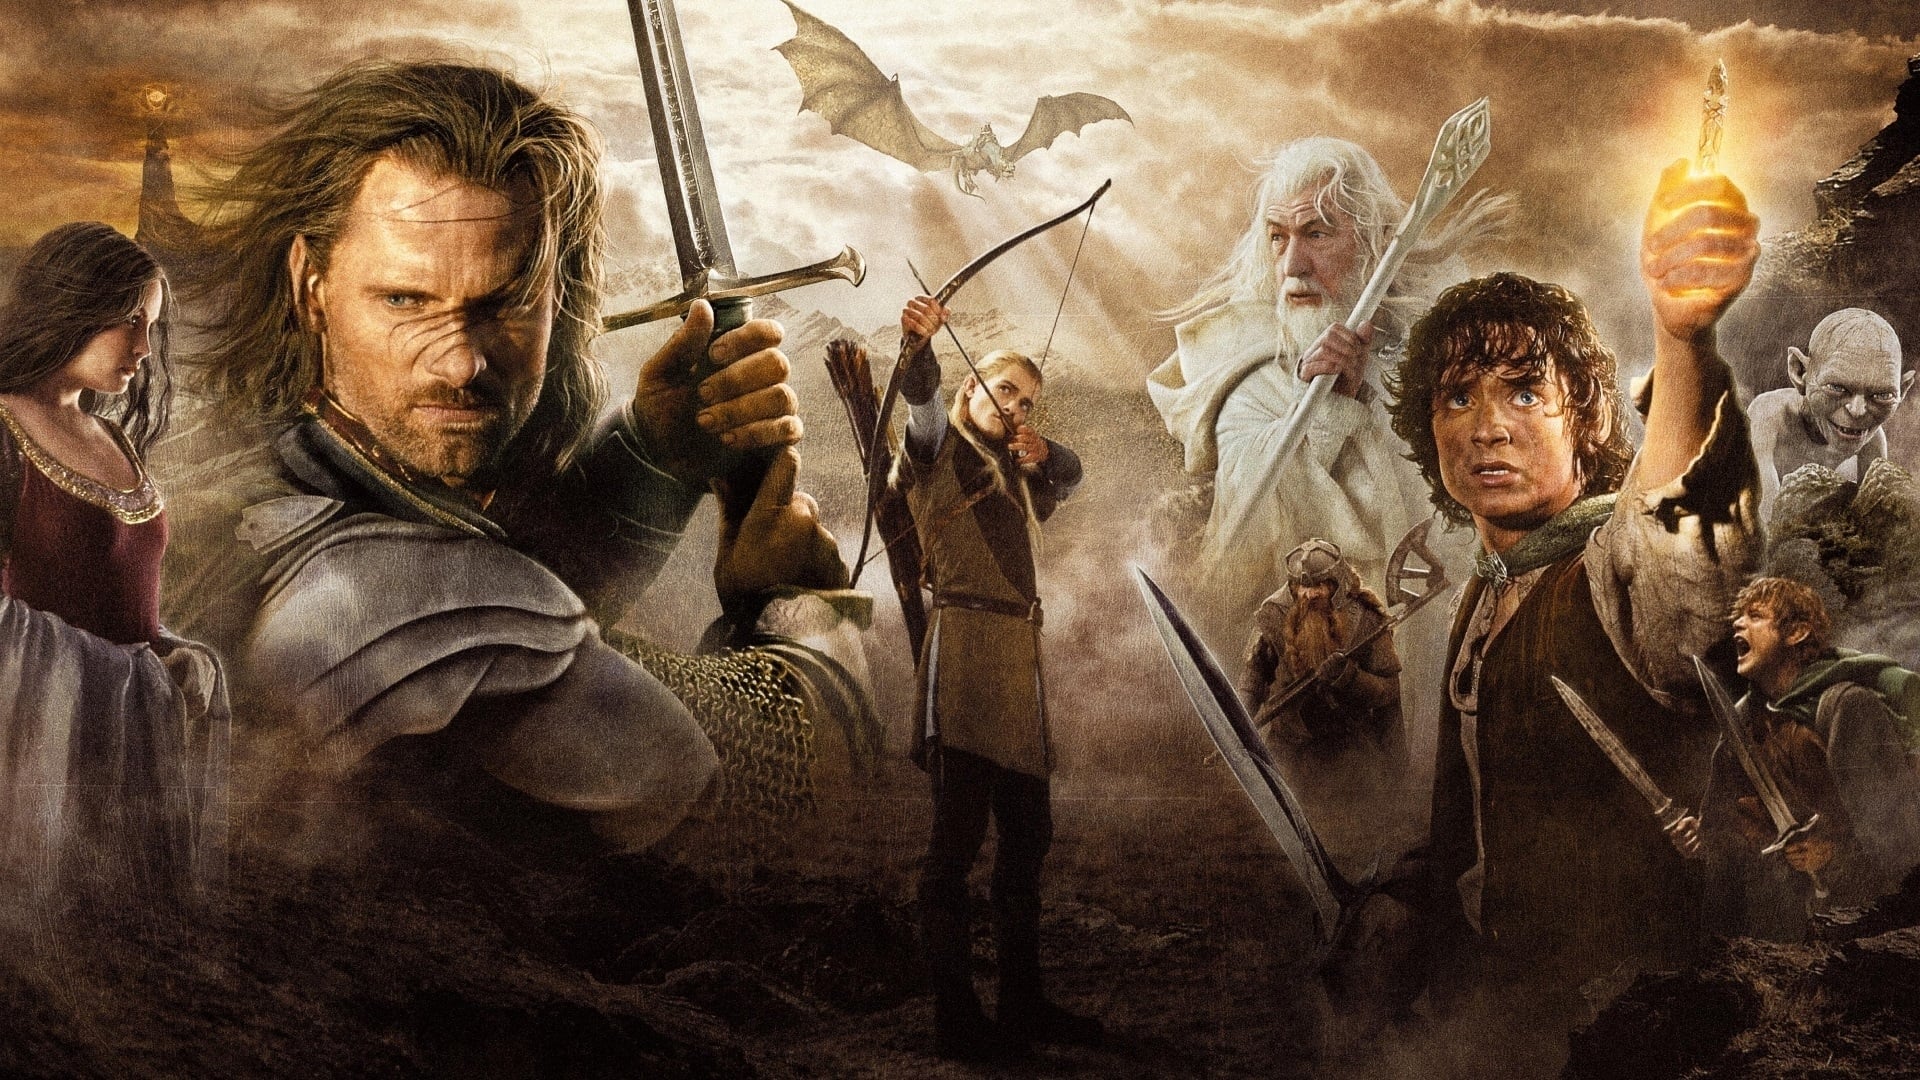 มหาสงครามชิงพิภพ   The Lord of the Rings: The Return of the King   ออนไลน์โดยสมบูรณ์ในปี 2003